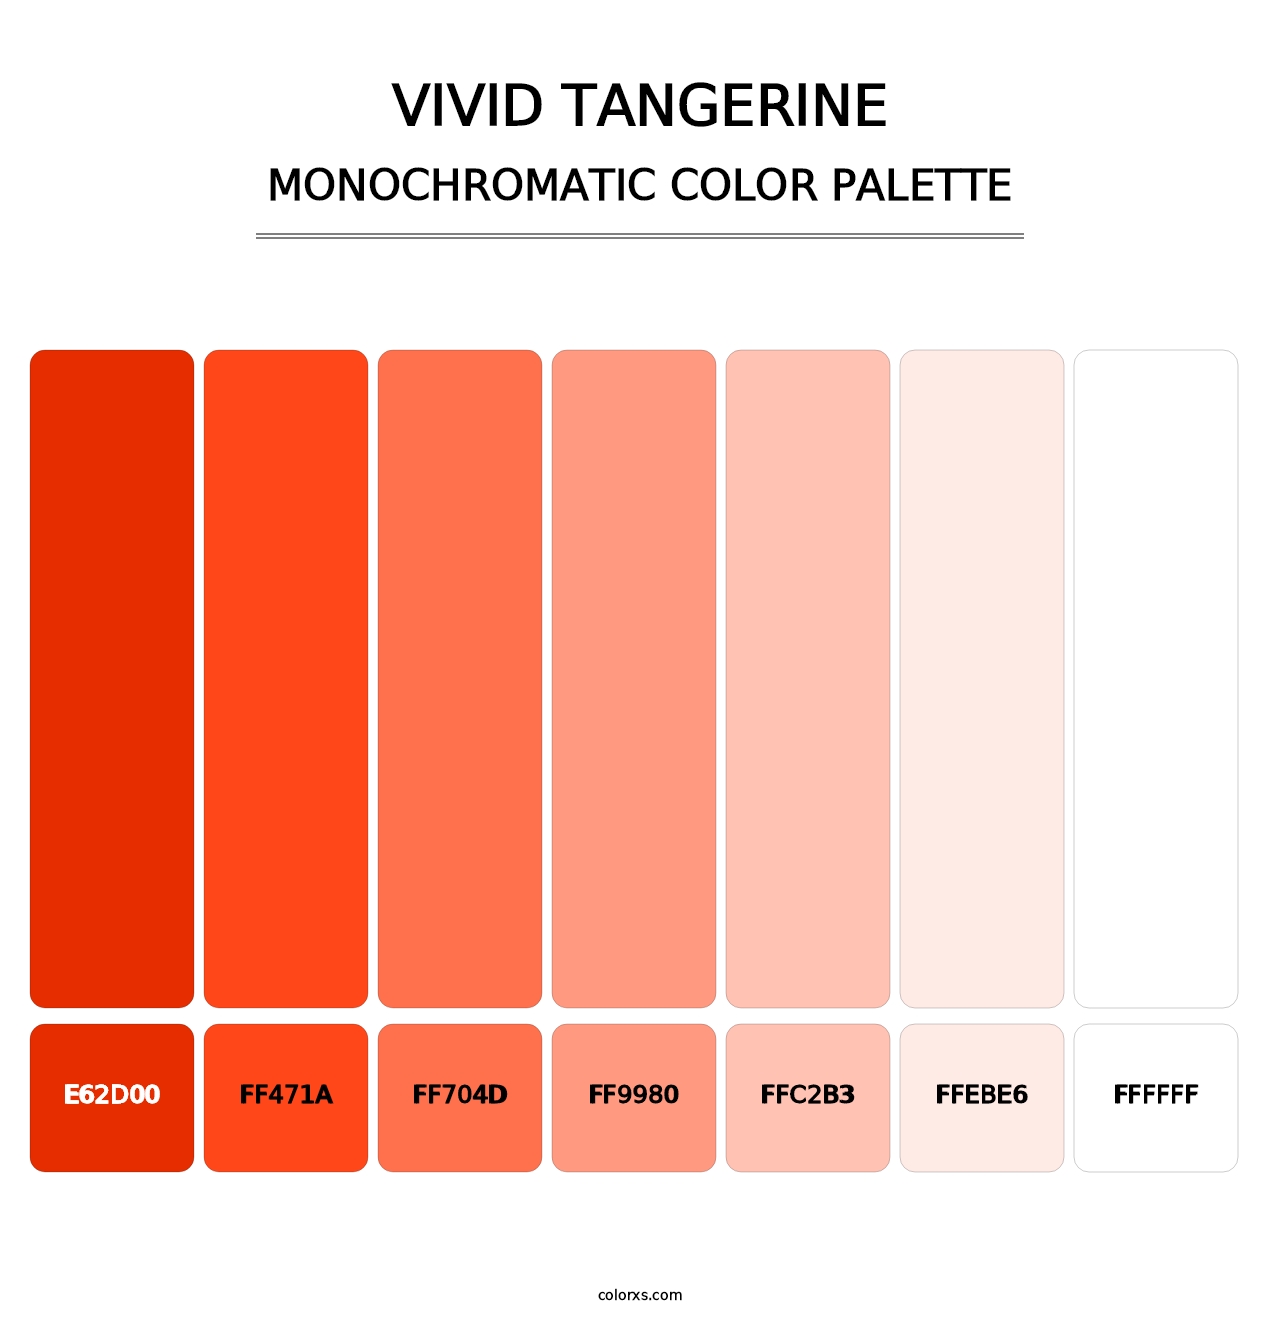 Vivid Tangerine - Monochromatic Color Palette